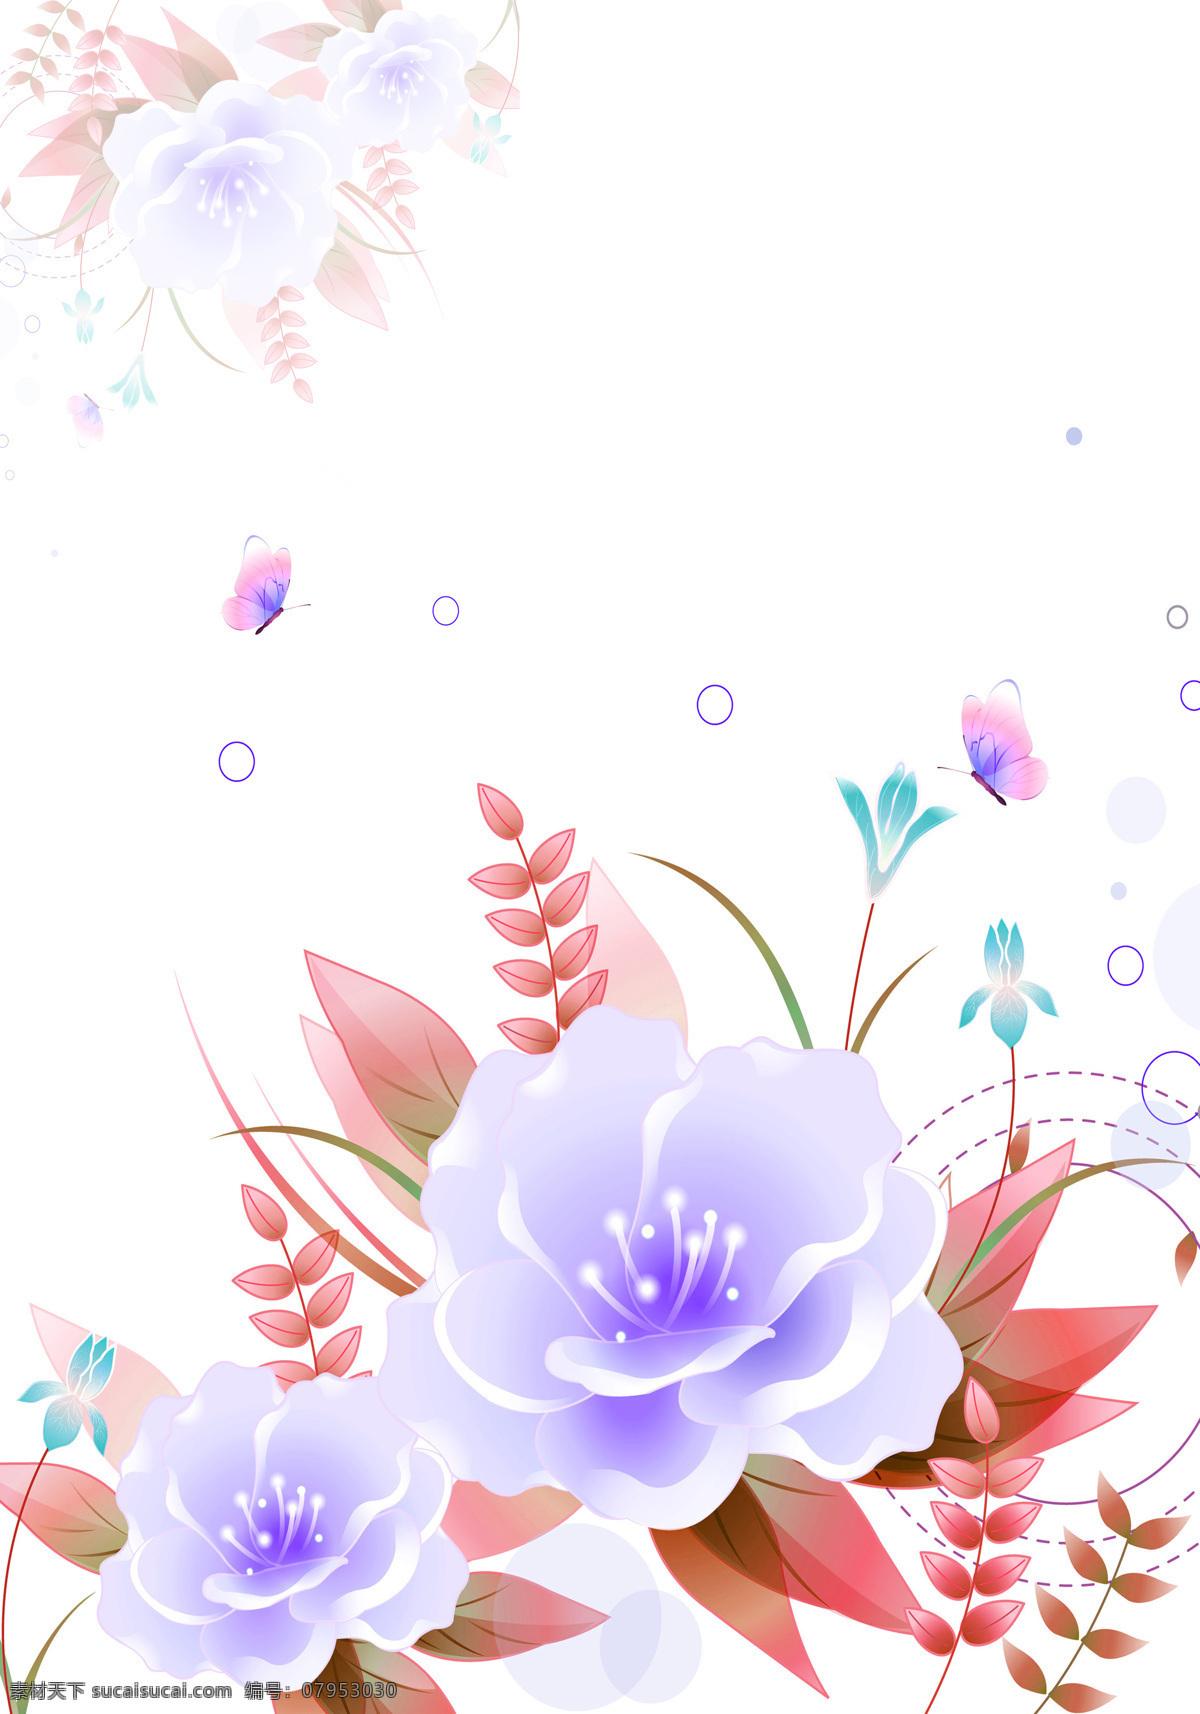 紫色 花朵 底纹边框 红色 蝴蝶 玫瑰花 叶子 移门图案 枝叶 紫色花朵 小圆圈 家居装饰素材